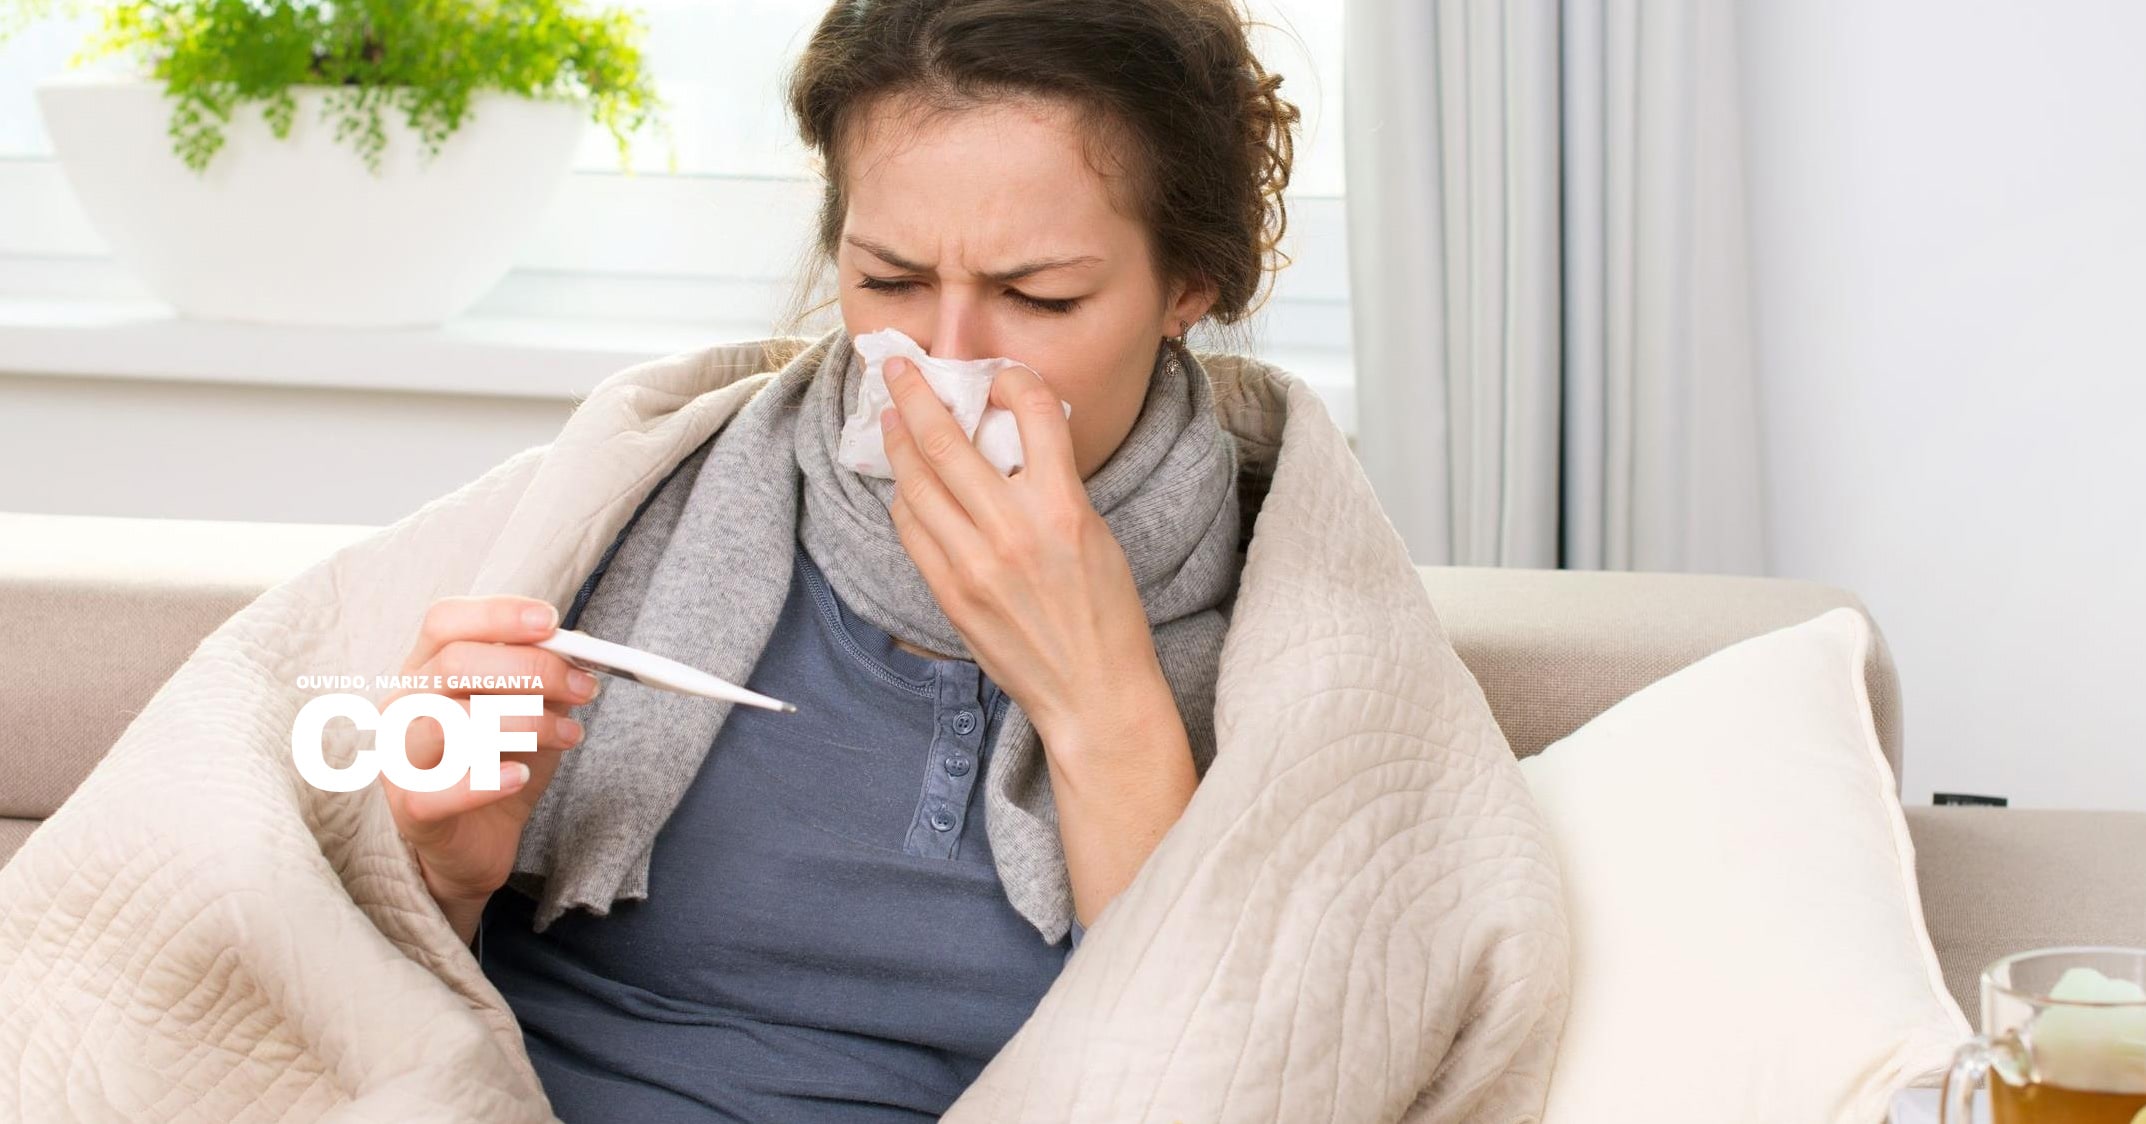 Ar condicionado faz mal para a gripe? Veja mitos e verdades!